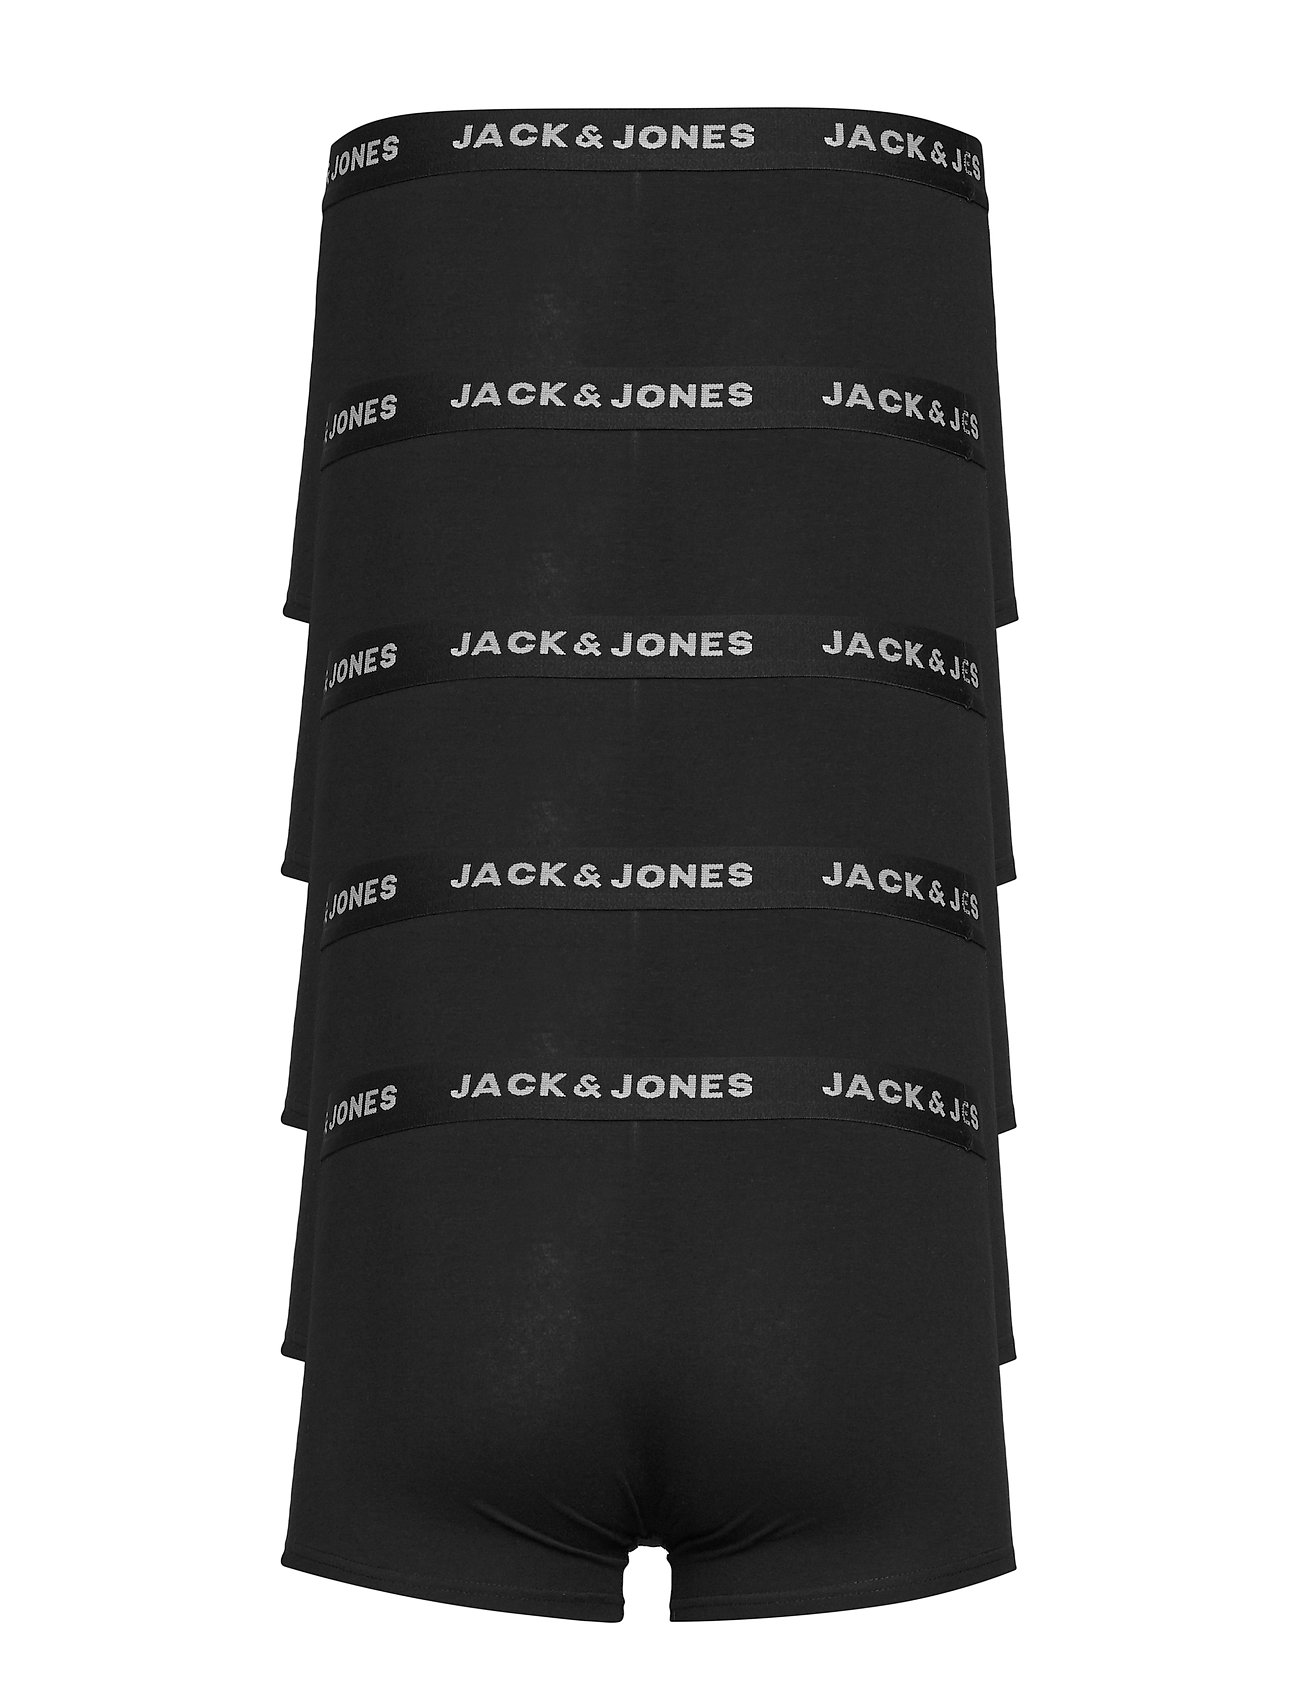 Jack & Jones - JACHUEY TRUNKS 5 PACK NOOS - zemākās cenas - black - 1